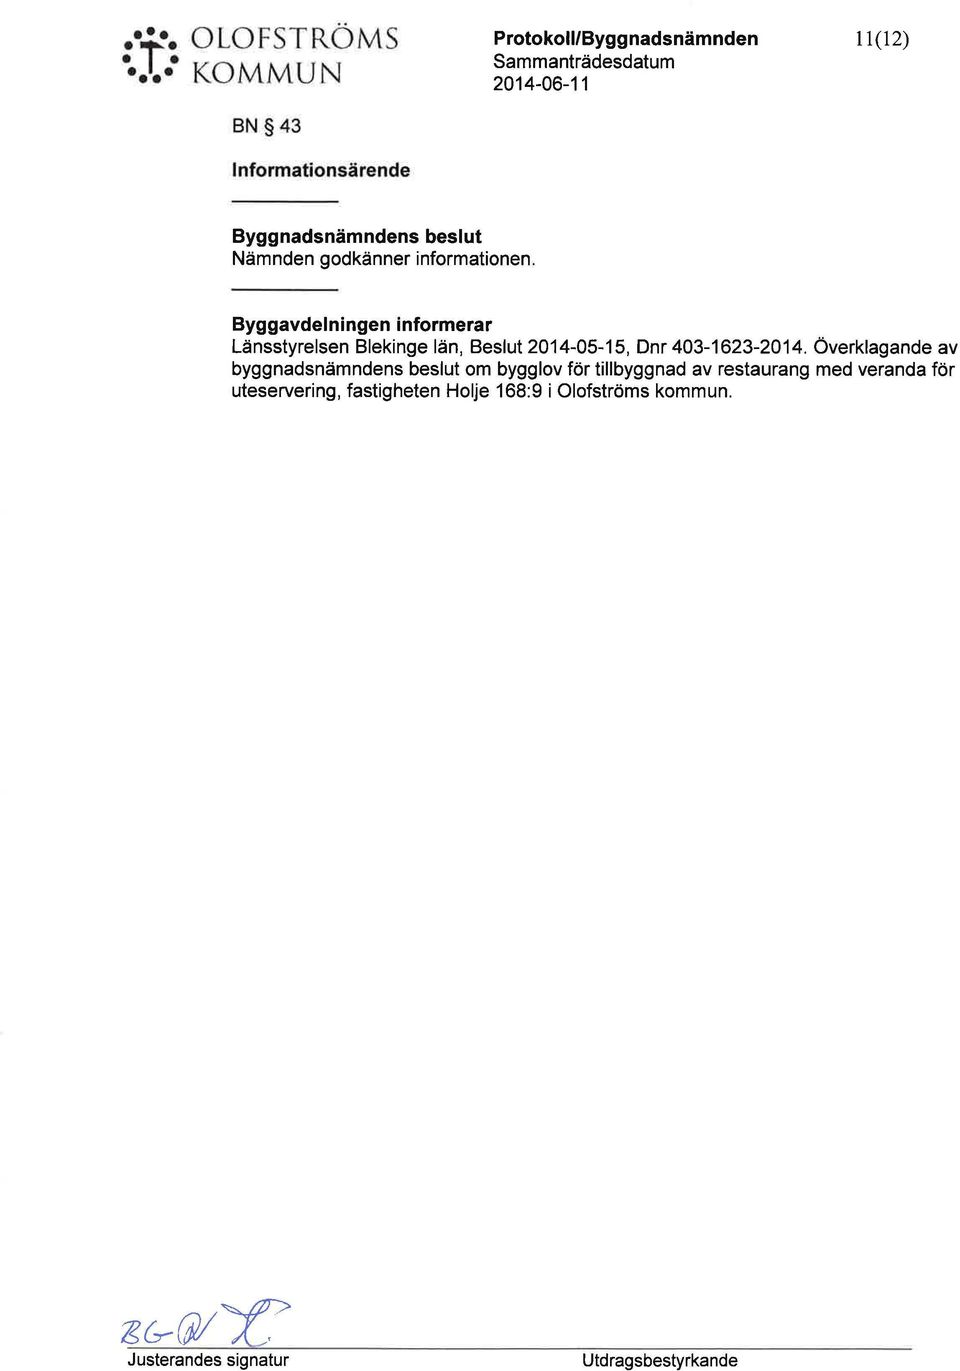 Byggavdelningen informerar Länsstyrelsen Blekinge län, Beslt 2014-05-15, Dnr